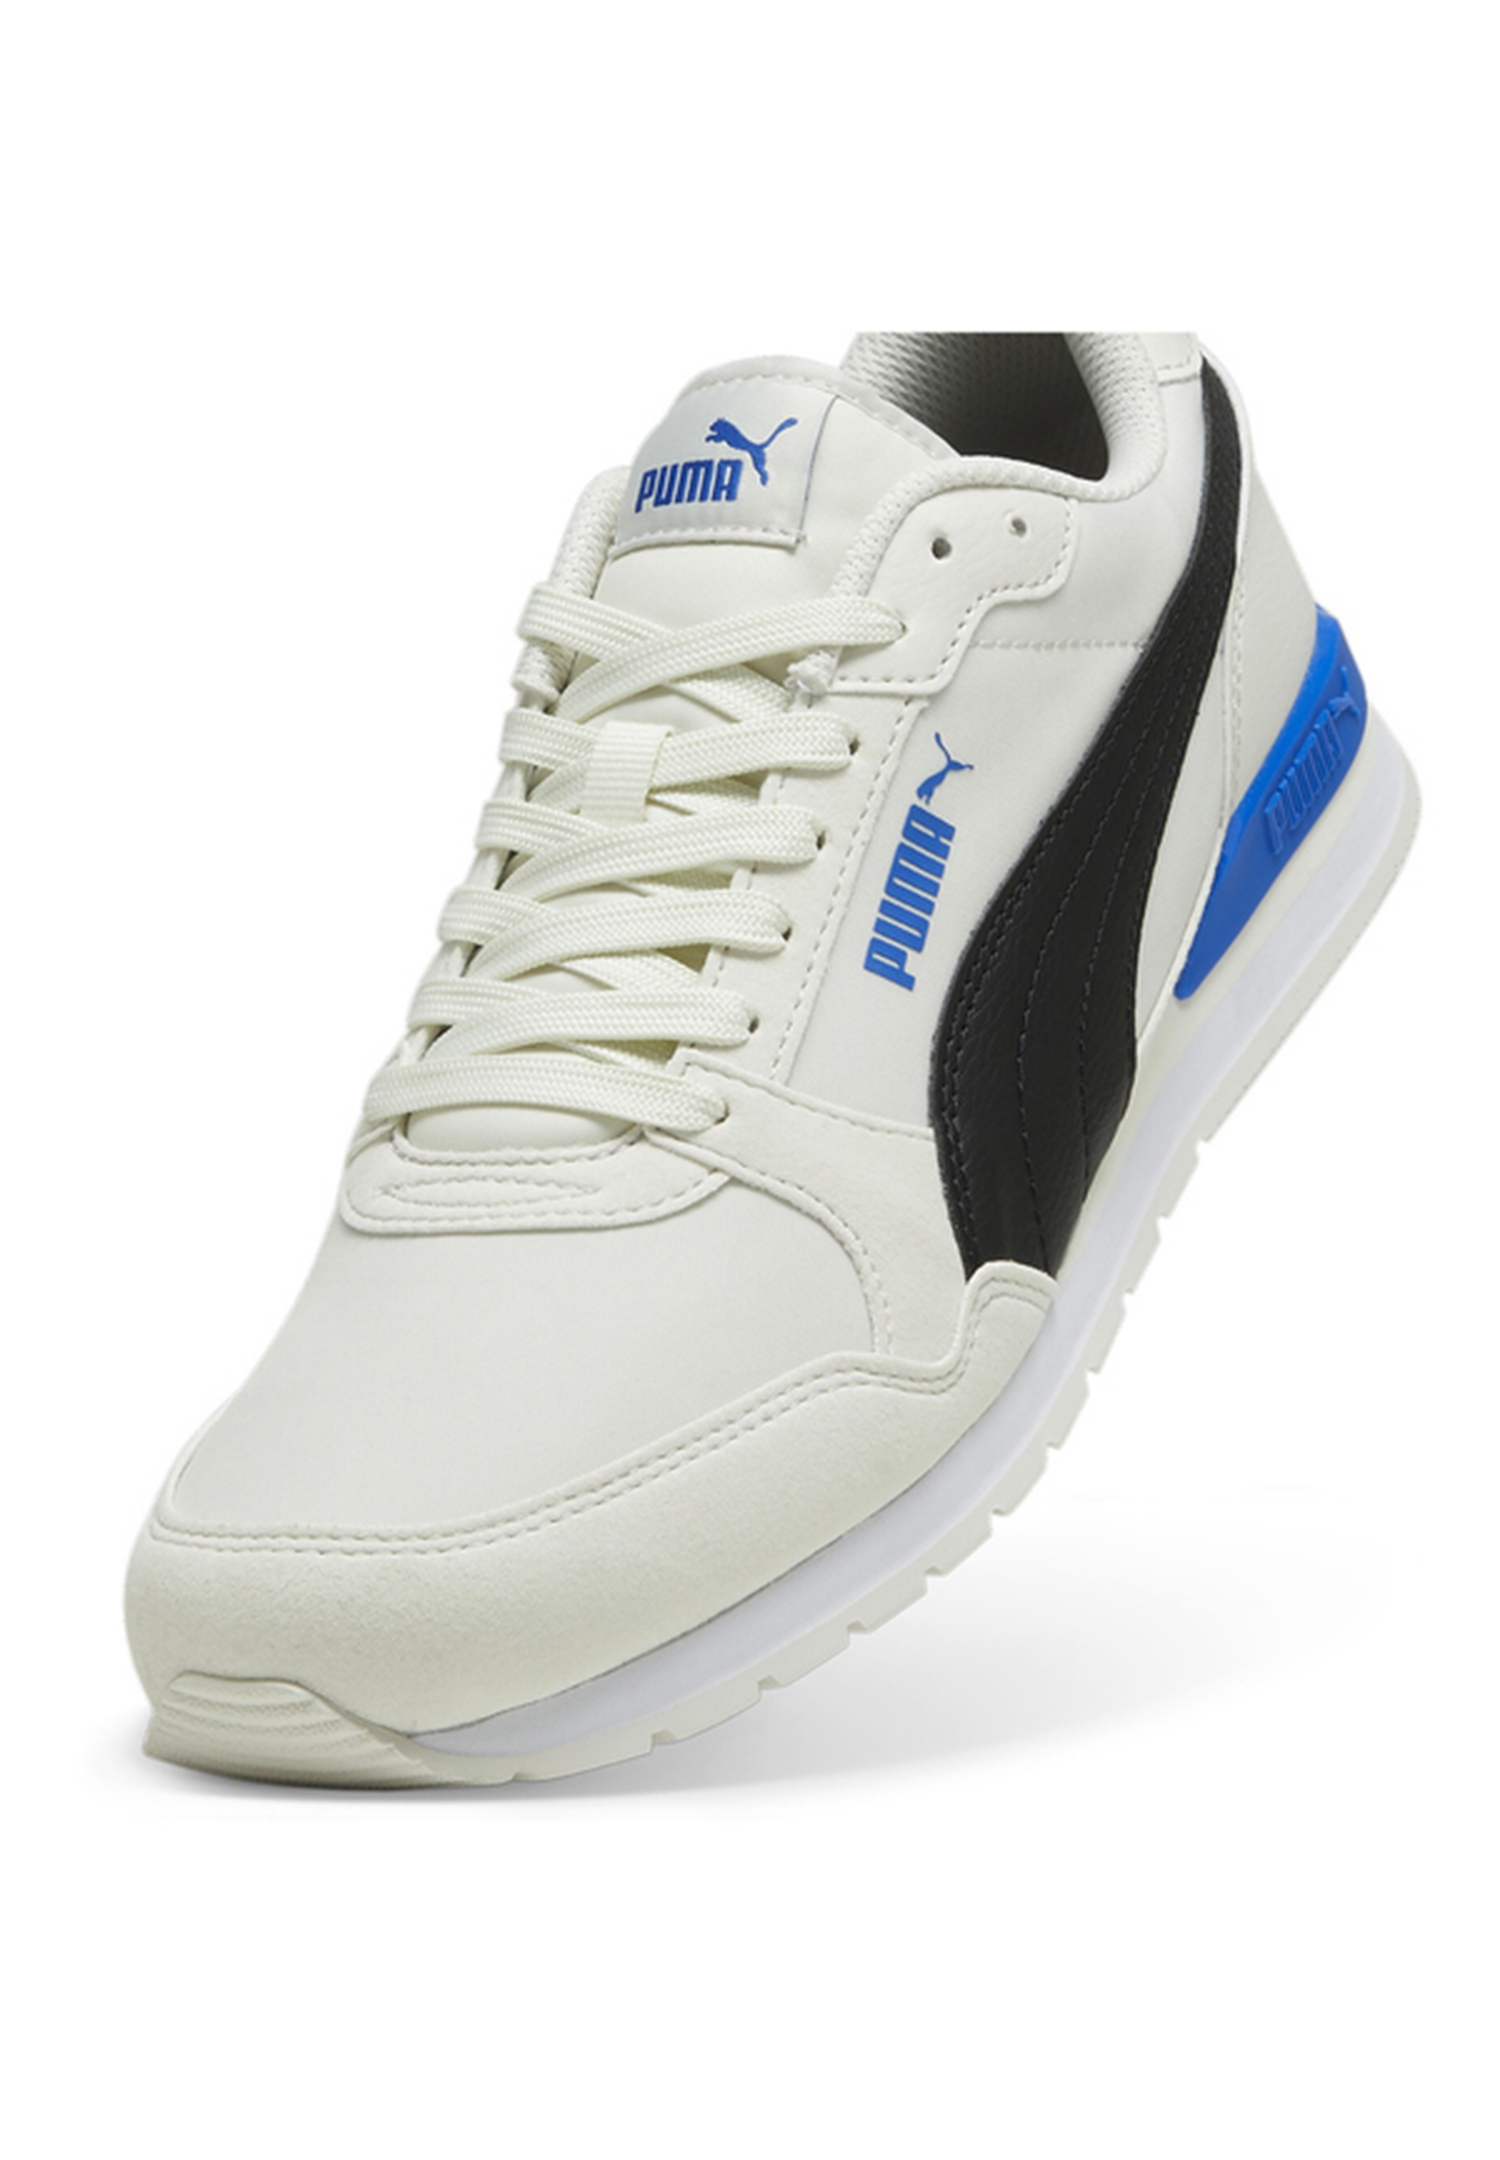 Puma ST Runner V3 NL Unisex Sneaker Turnschuhe 384857 24 grau